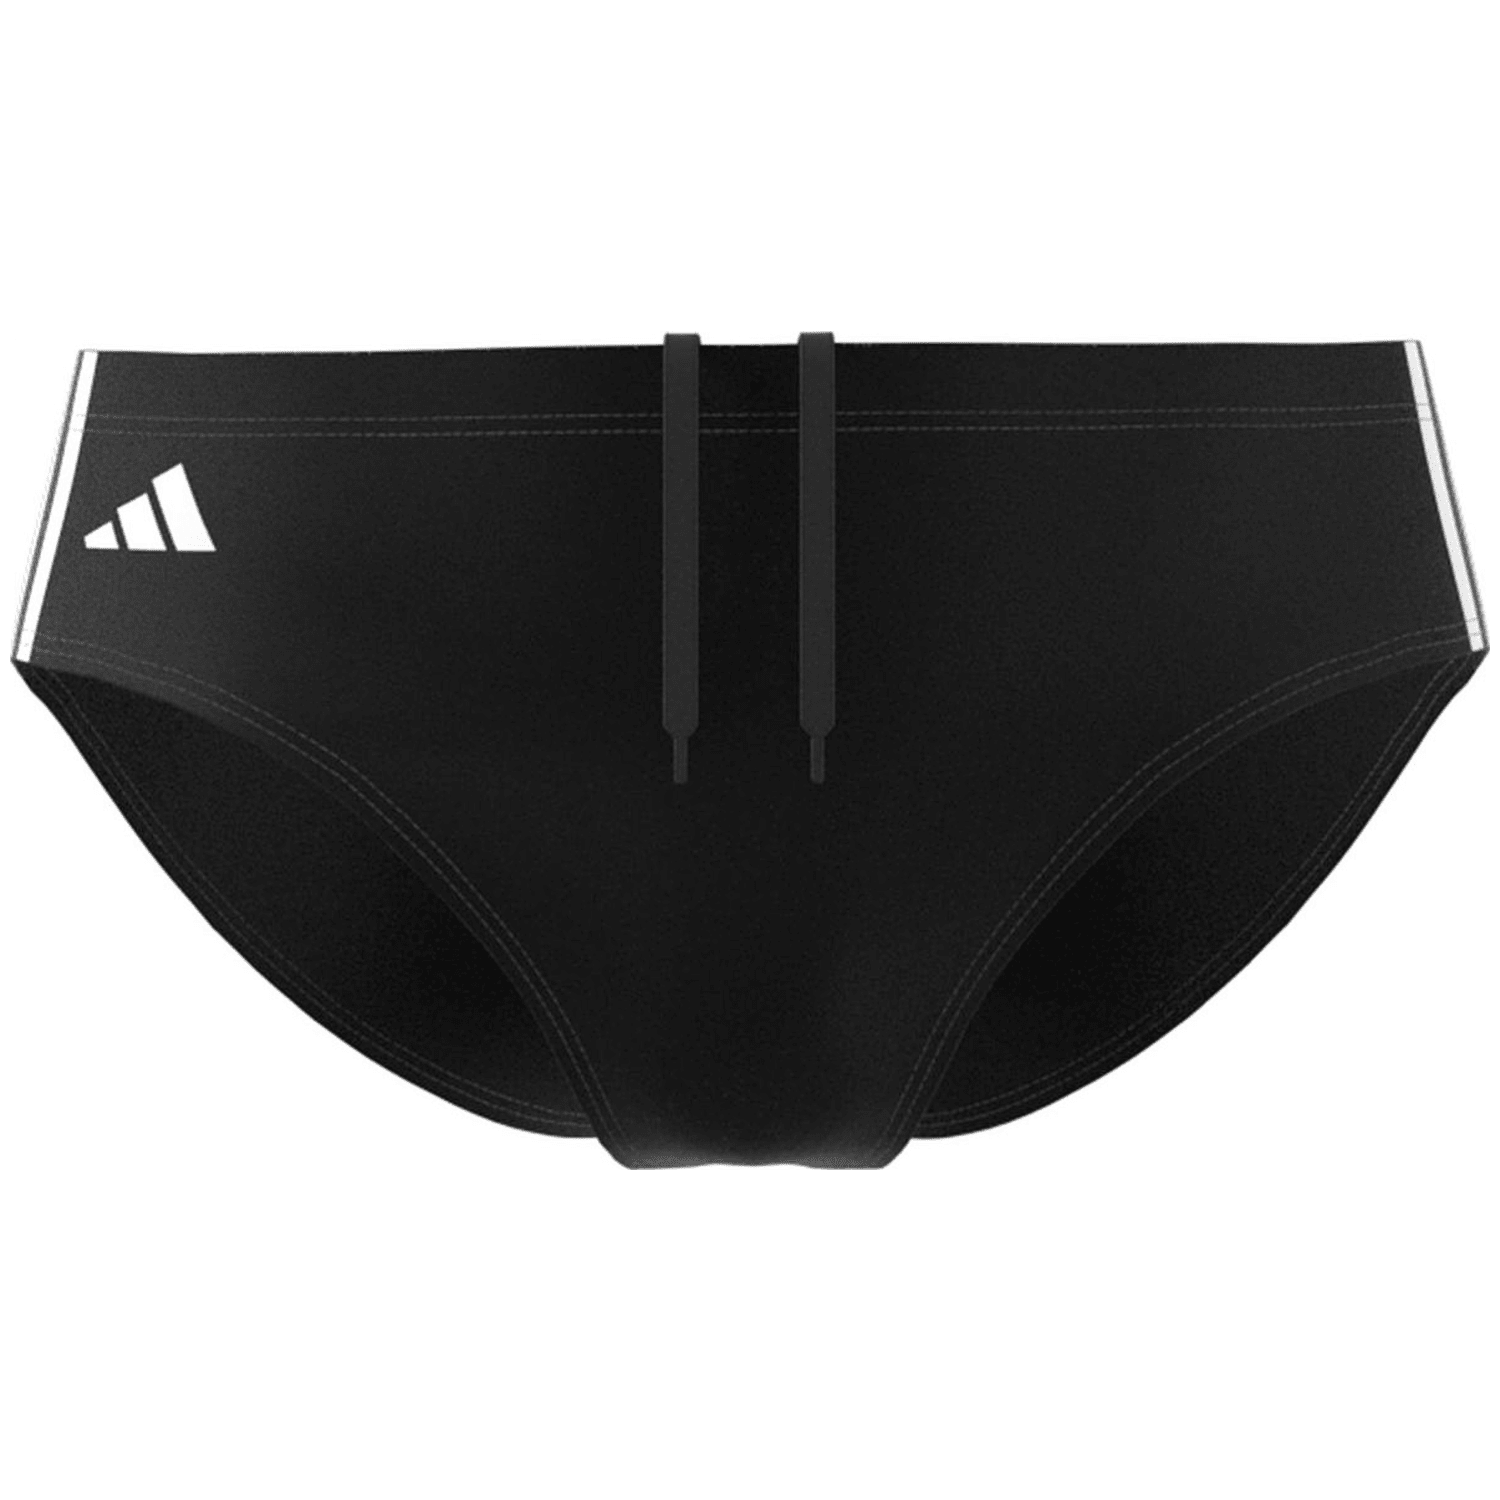 Adidas Classic 3-Streifen Badehose Herren